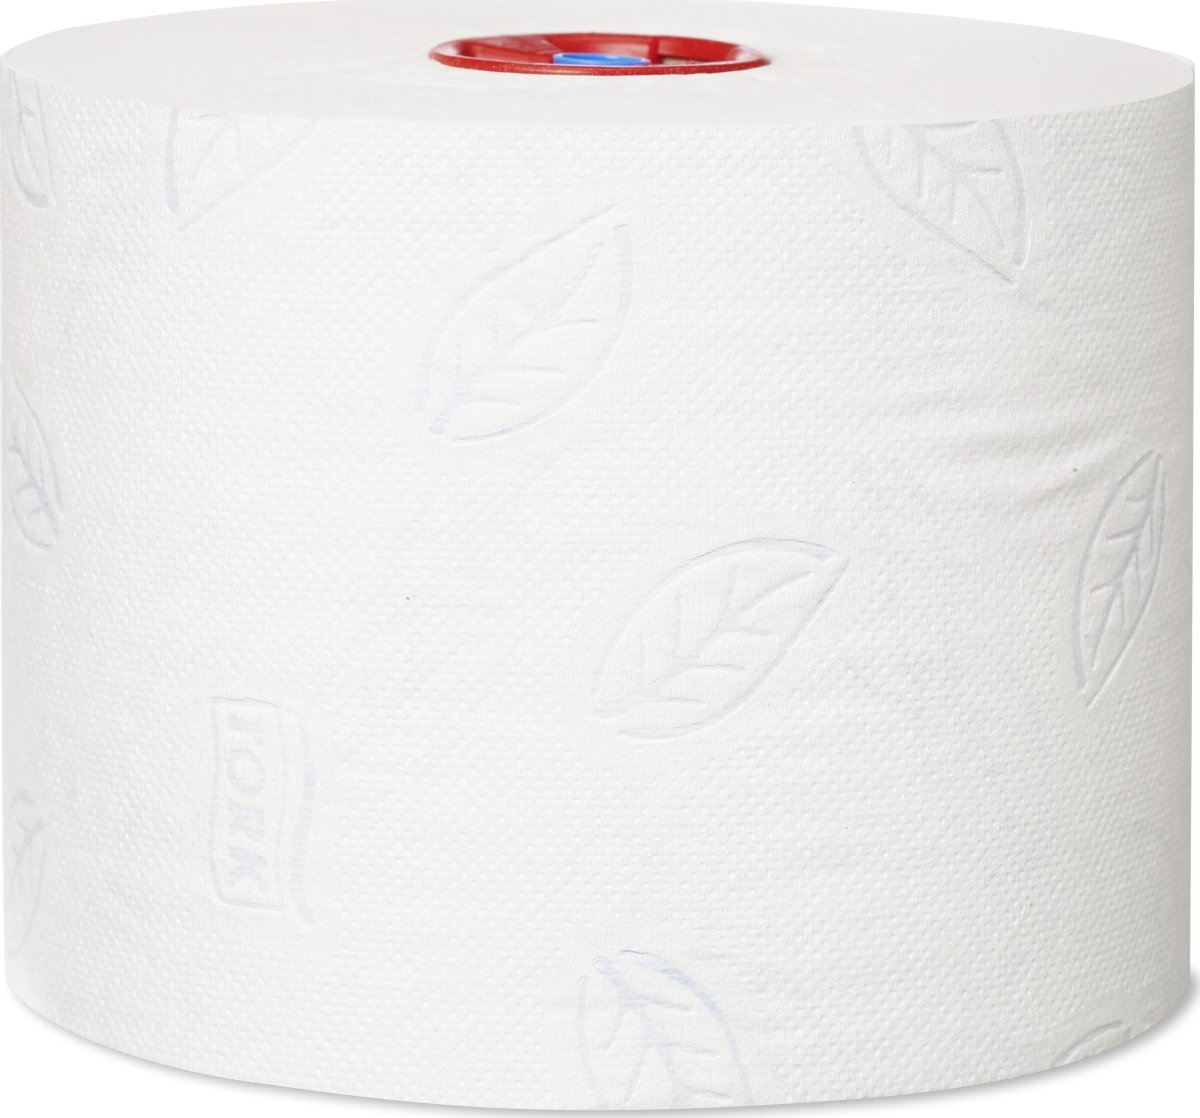 Tork T6 Premium toiletpapir, 2-lags, 27 ruller